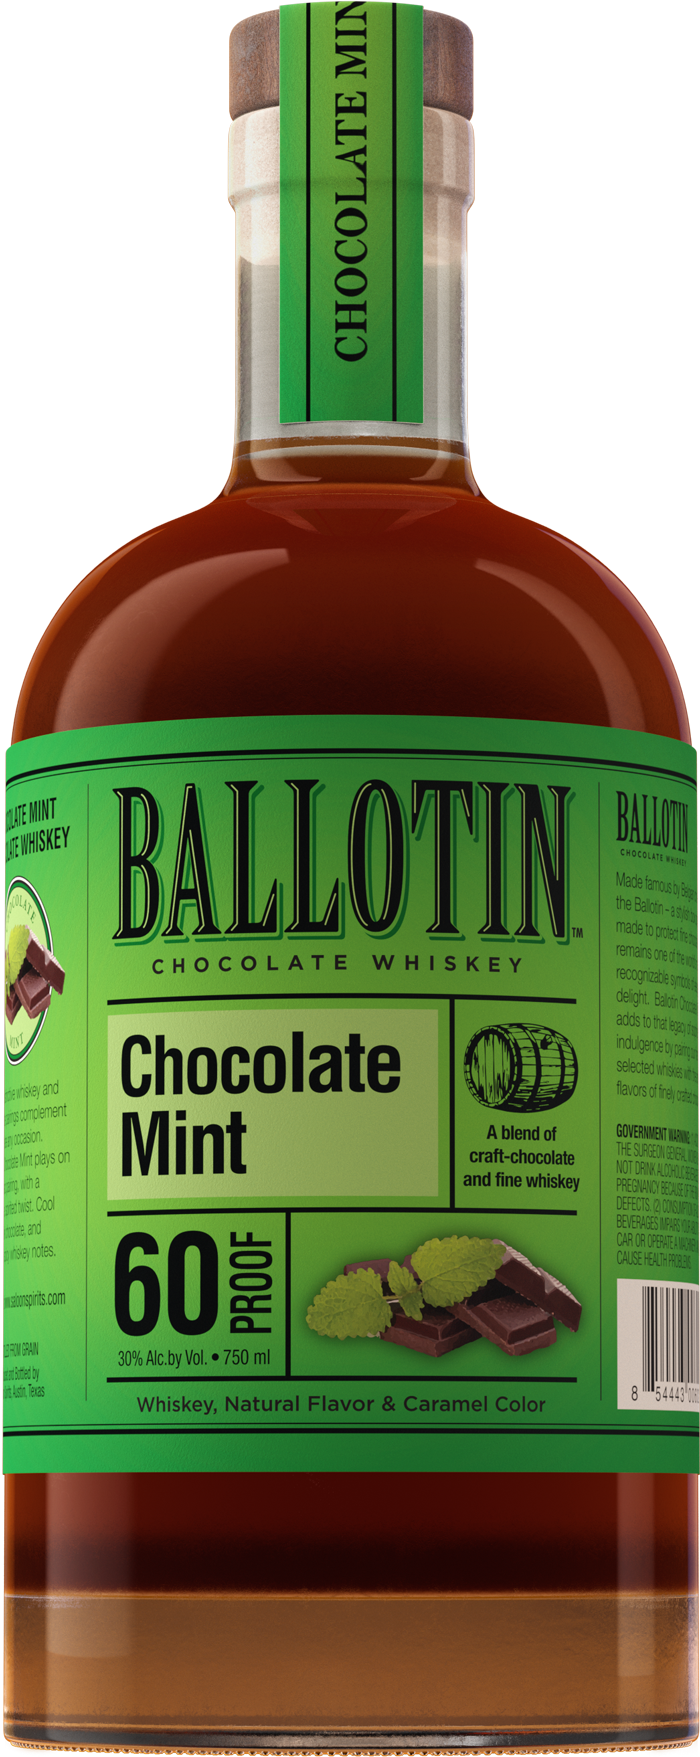 Buy Ballotin Bourbon Ball Whiskey